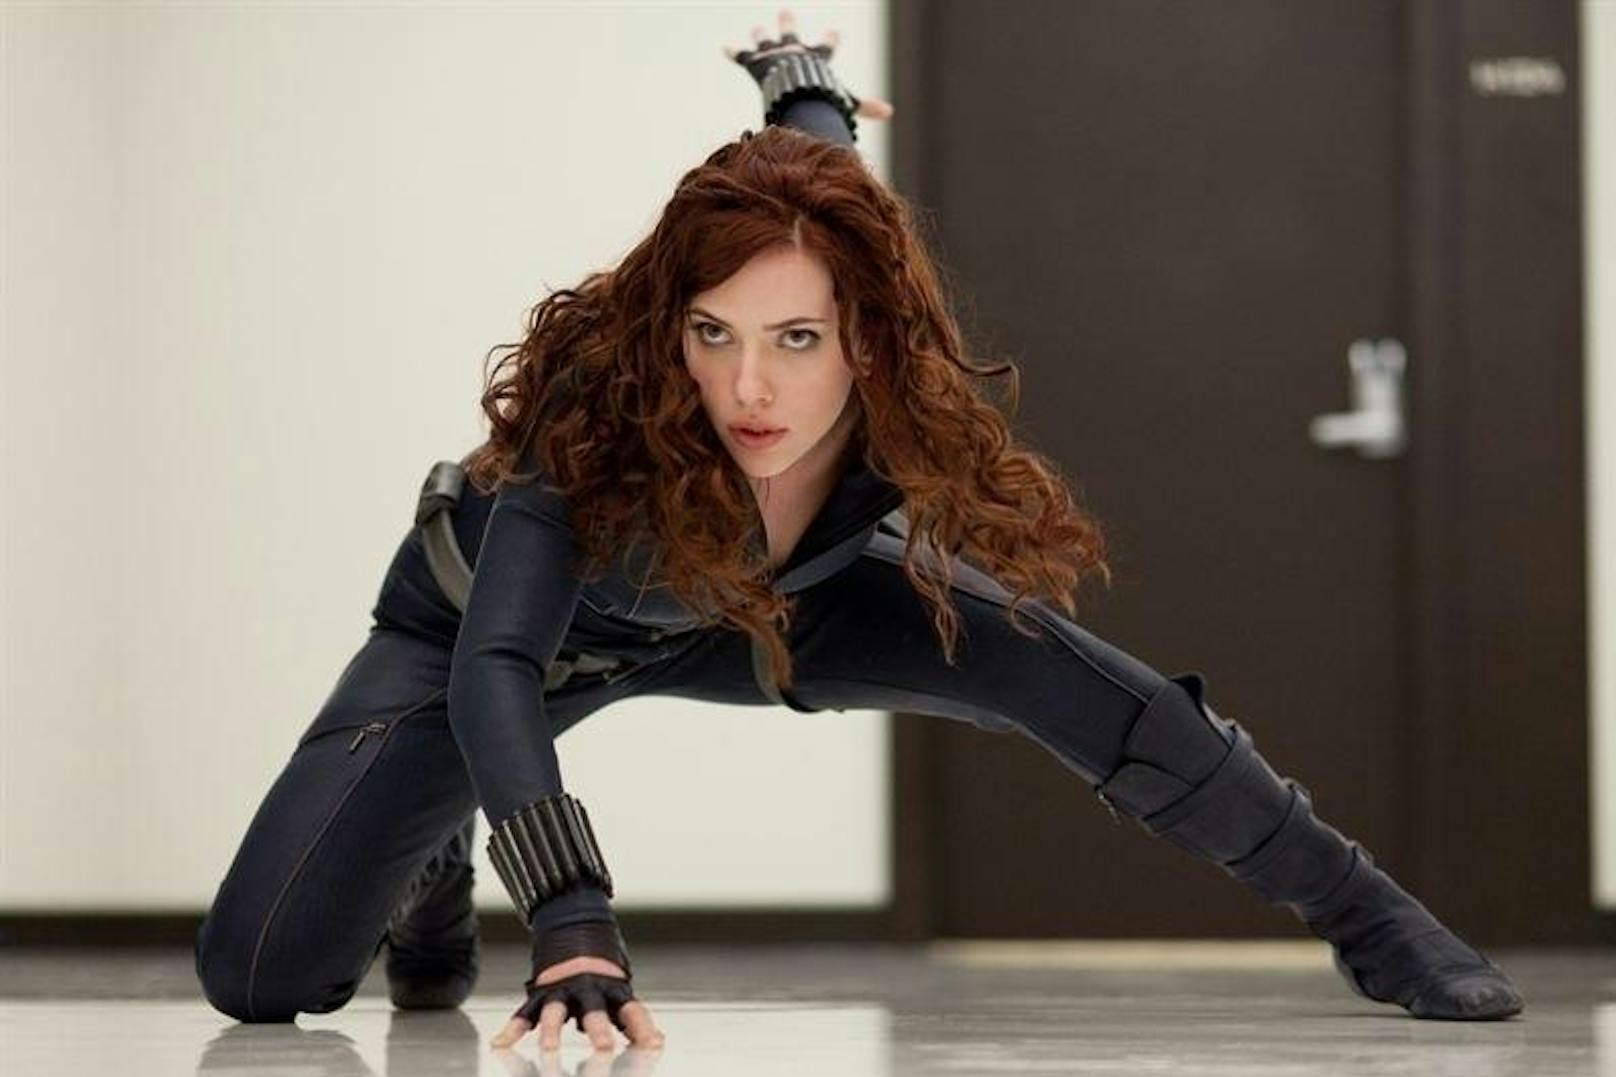 Scarlett Johansson als Black Widow in "Iron Man 2".